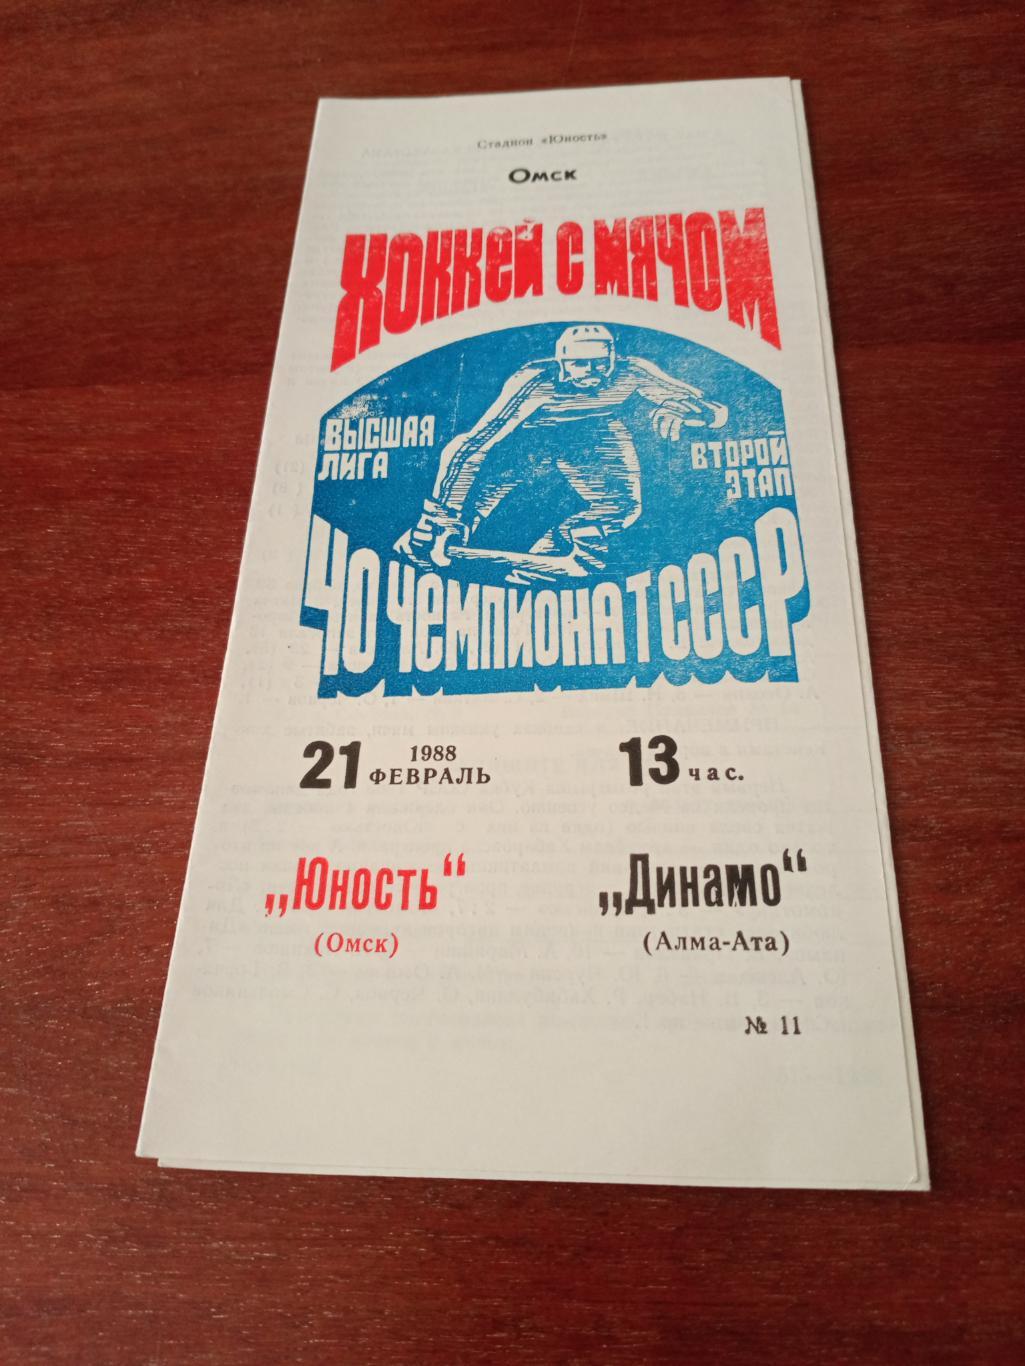 Юность Омск - Динамо Алма-Ата. 21 февраля 1988 г